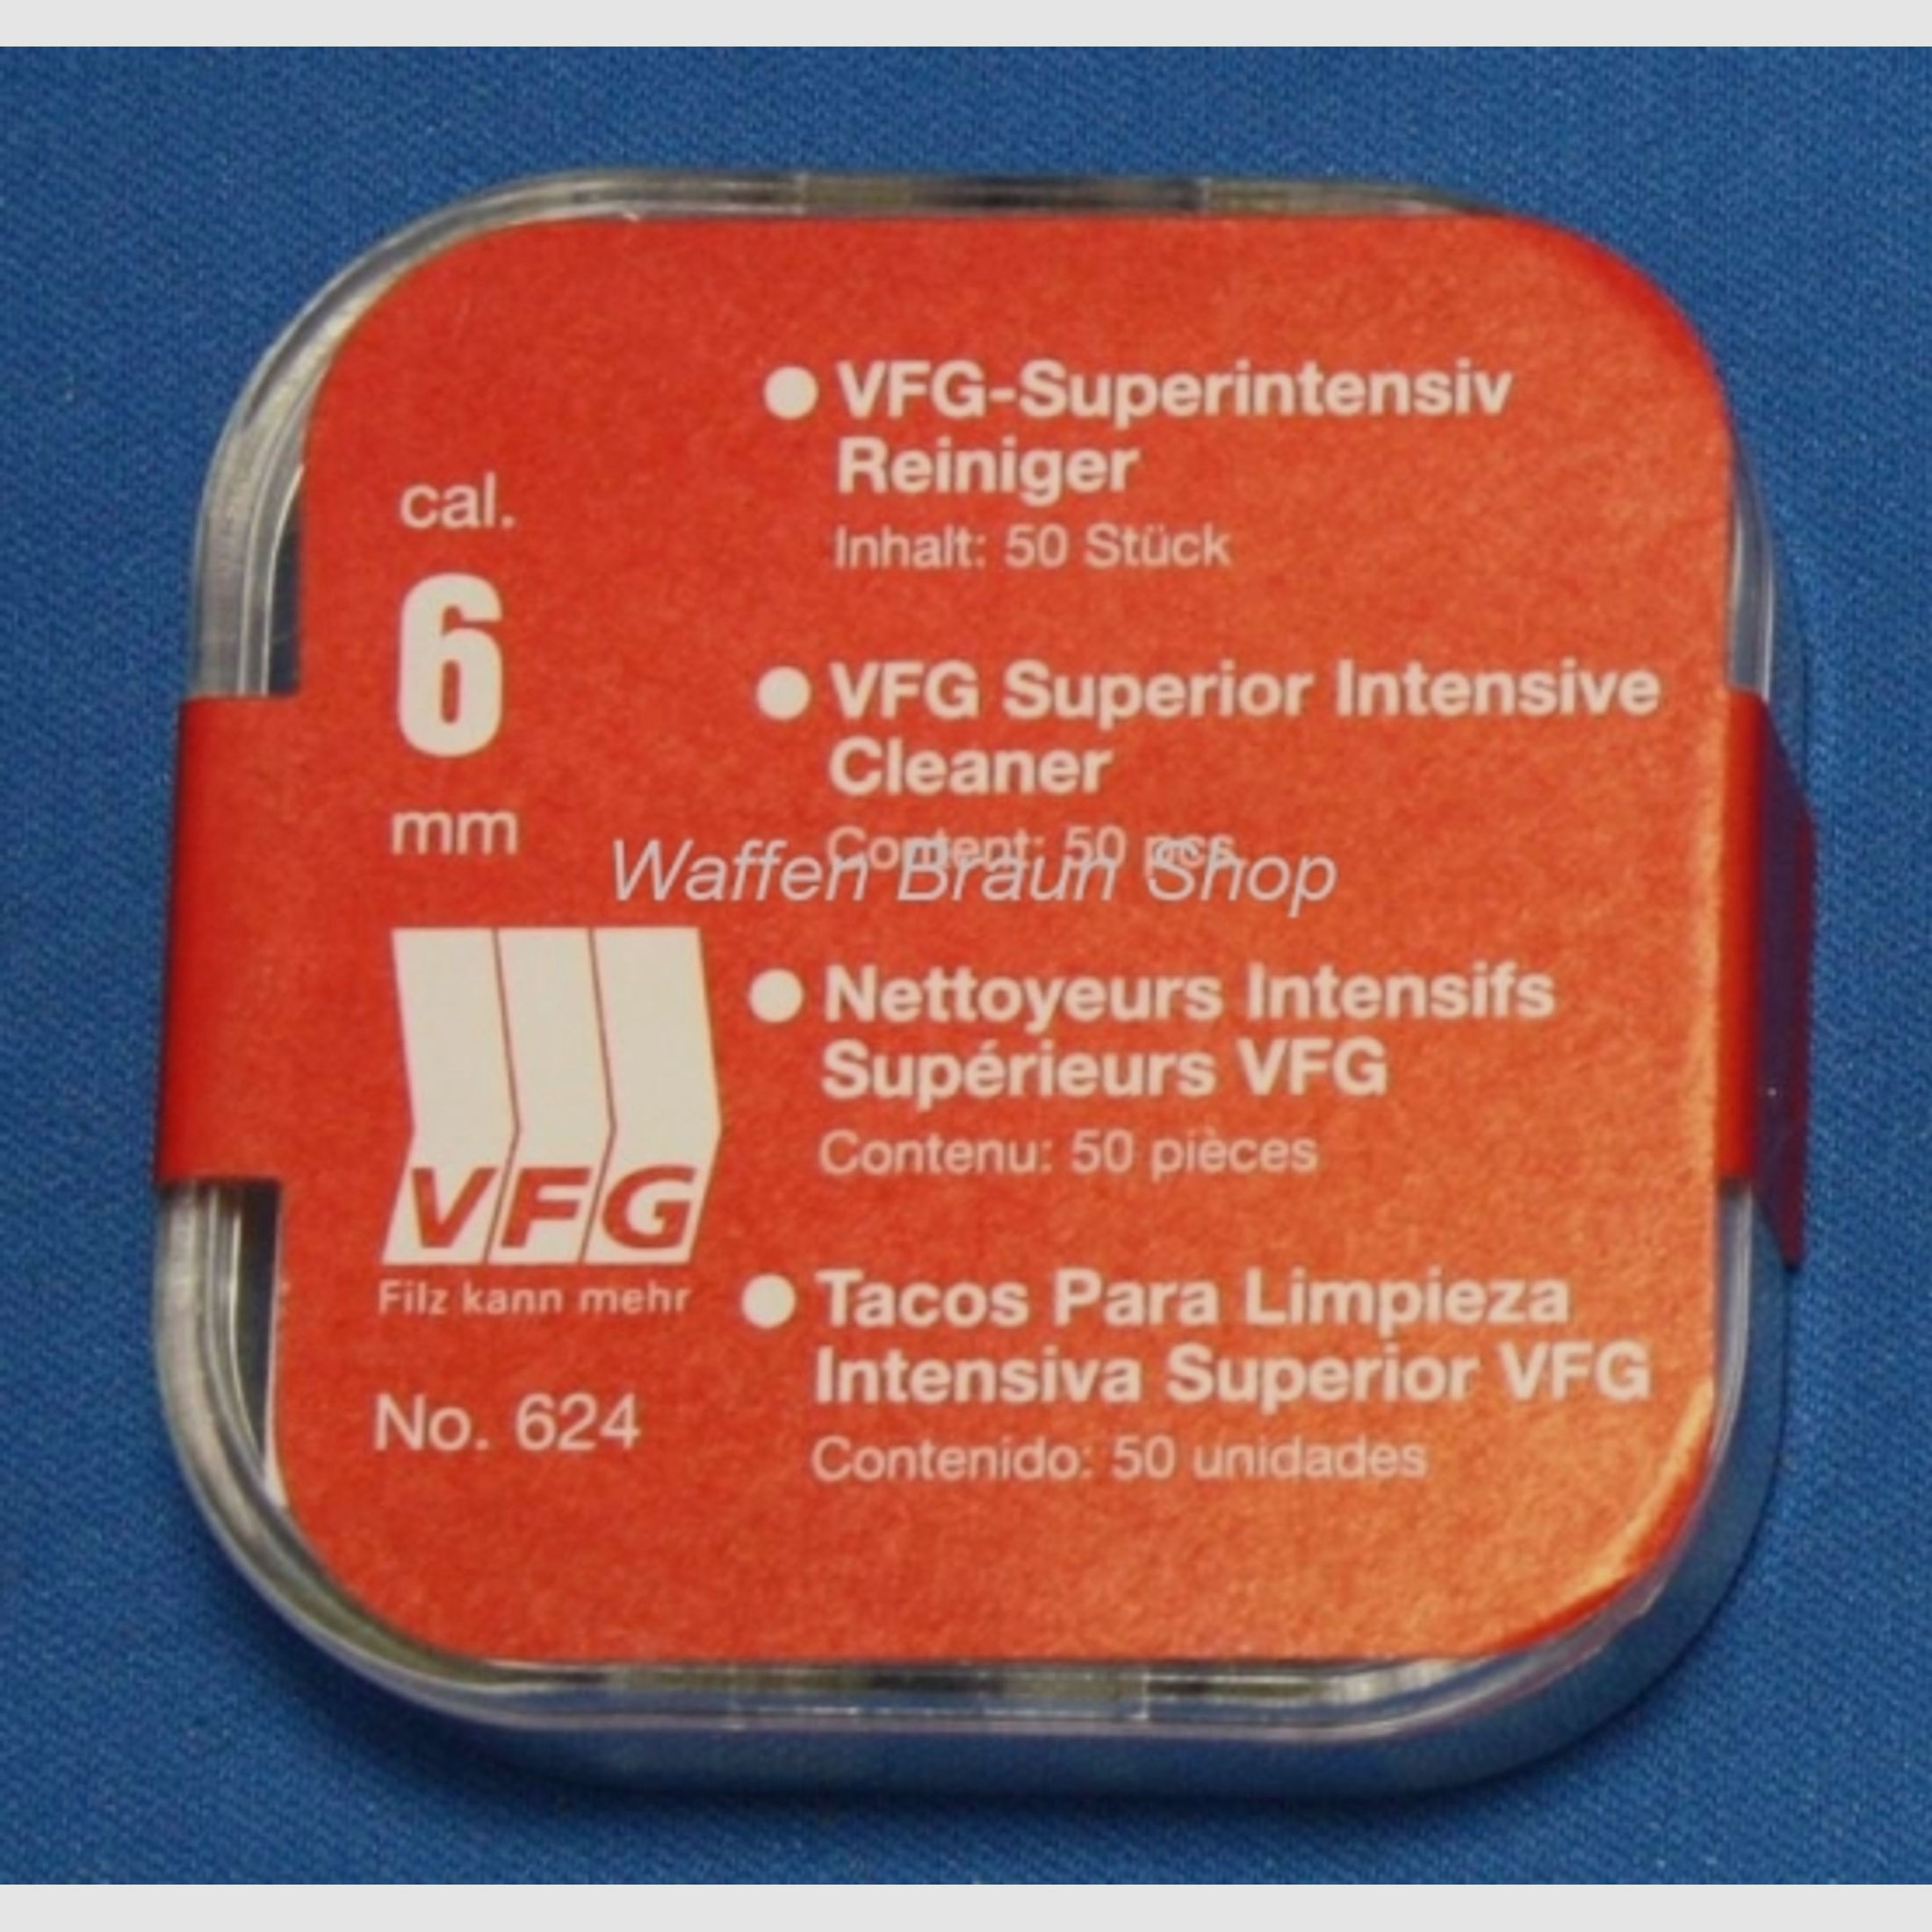 VFG Superintensiv Reiniger, No. 624, cal. 6mm, 50 Stück